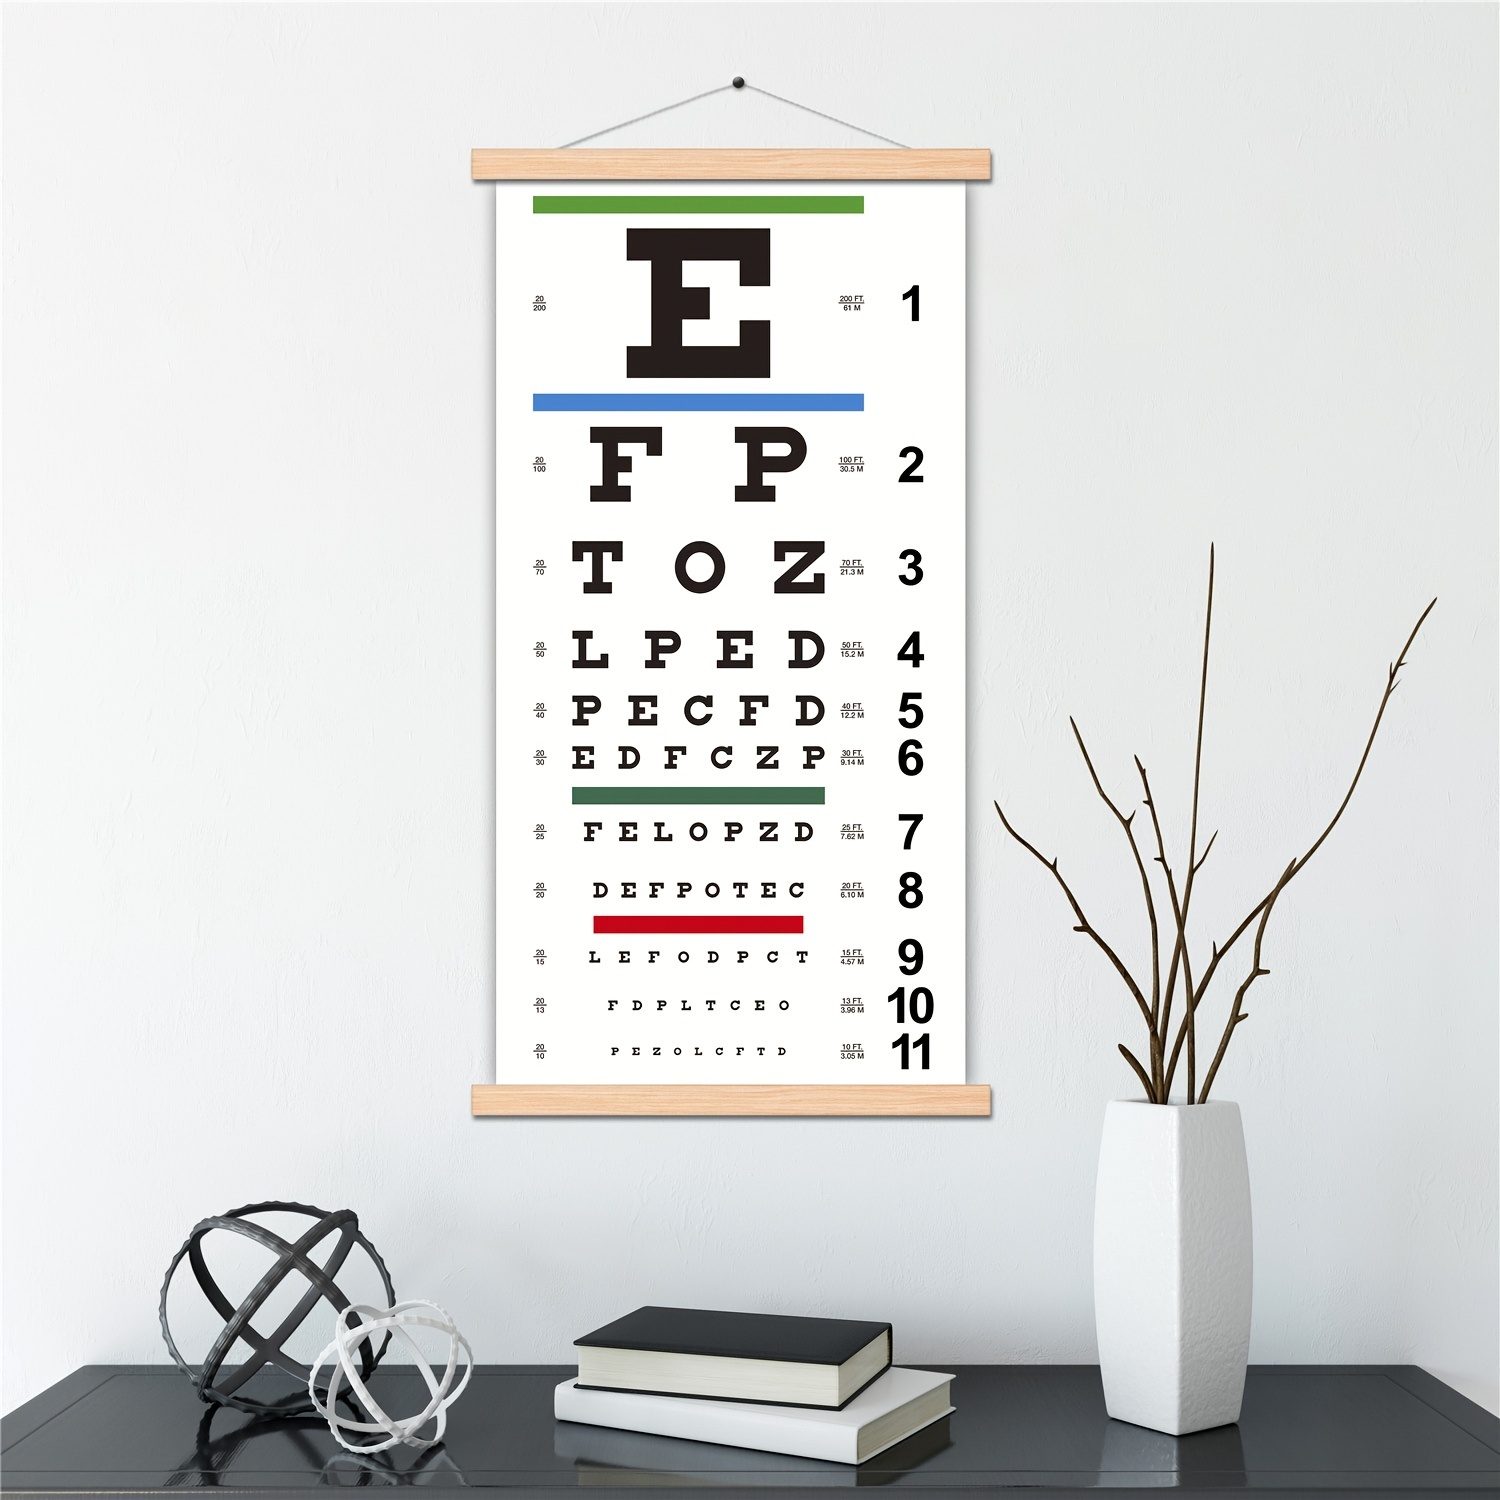 Eye Chart, Snellen Eye Chart, Canvas Wall Chart Non-Reflective